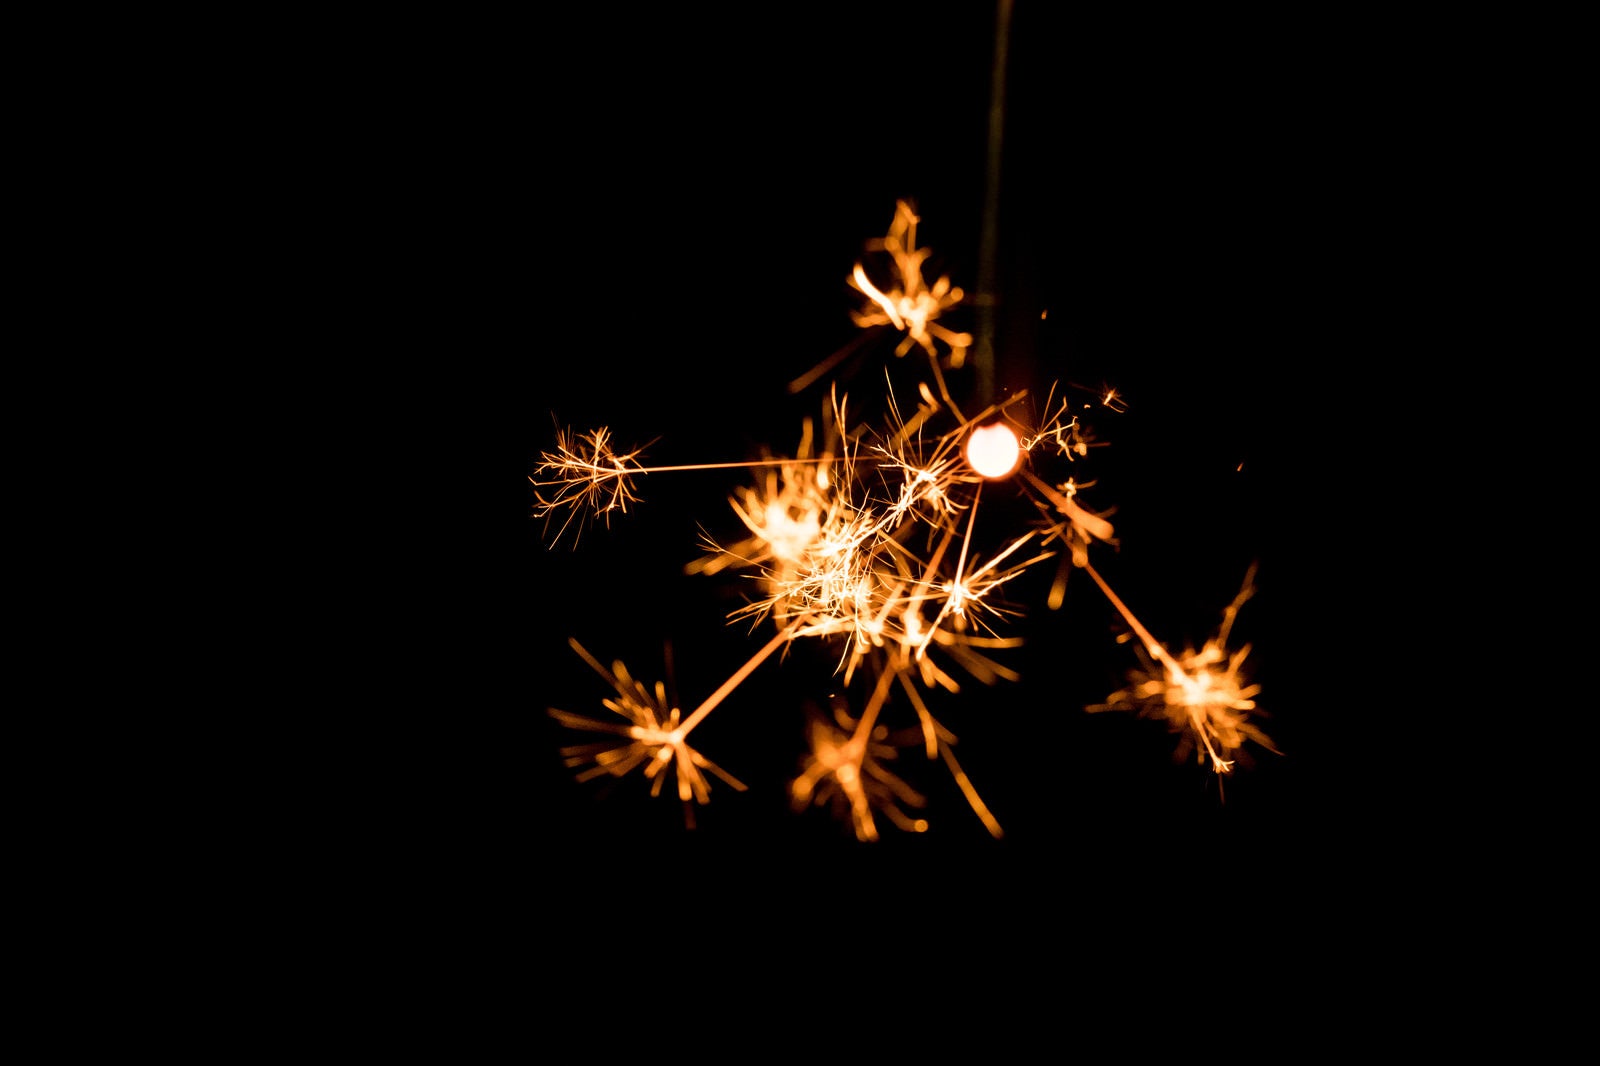 「線香花火の儚い火花」の写真